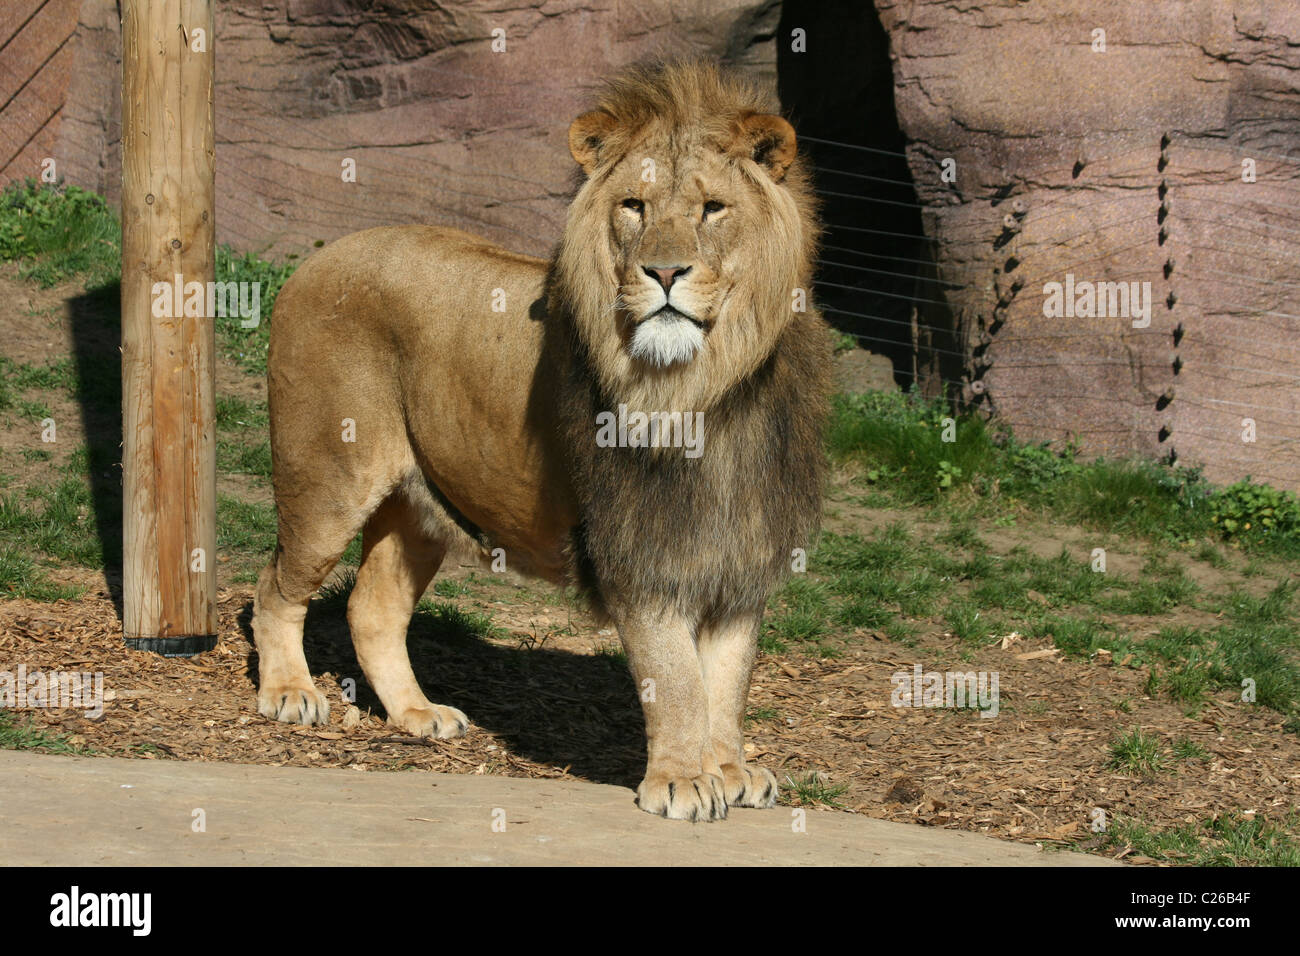 Un homme lion debout dans son enclos au zoo Banque D'Images